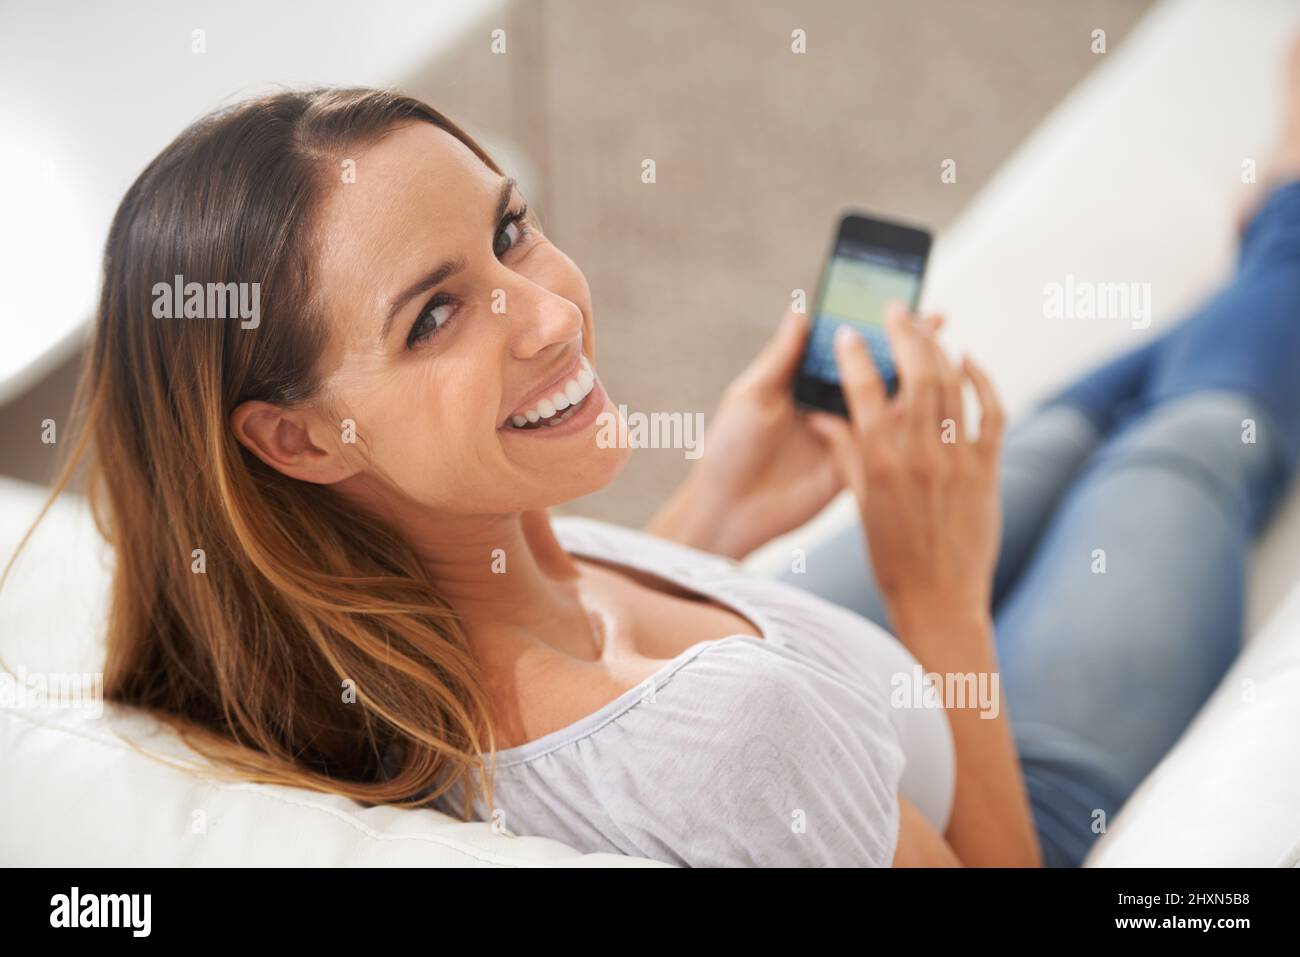 Guarda questo spazio. Scatto di una donna che guarda sopra la spalla mentre usa il suo telefono. Foto Stock